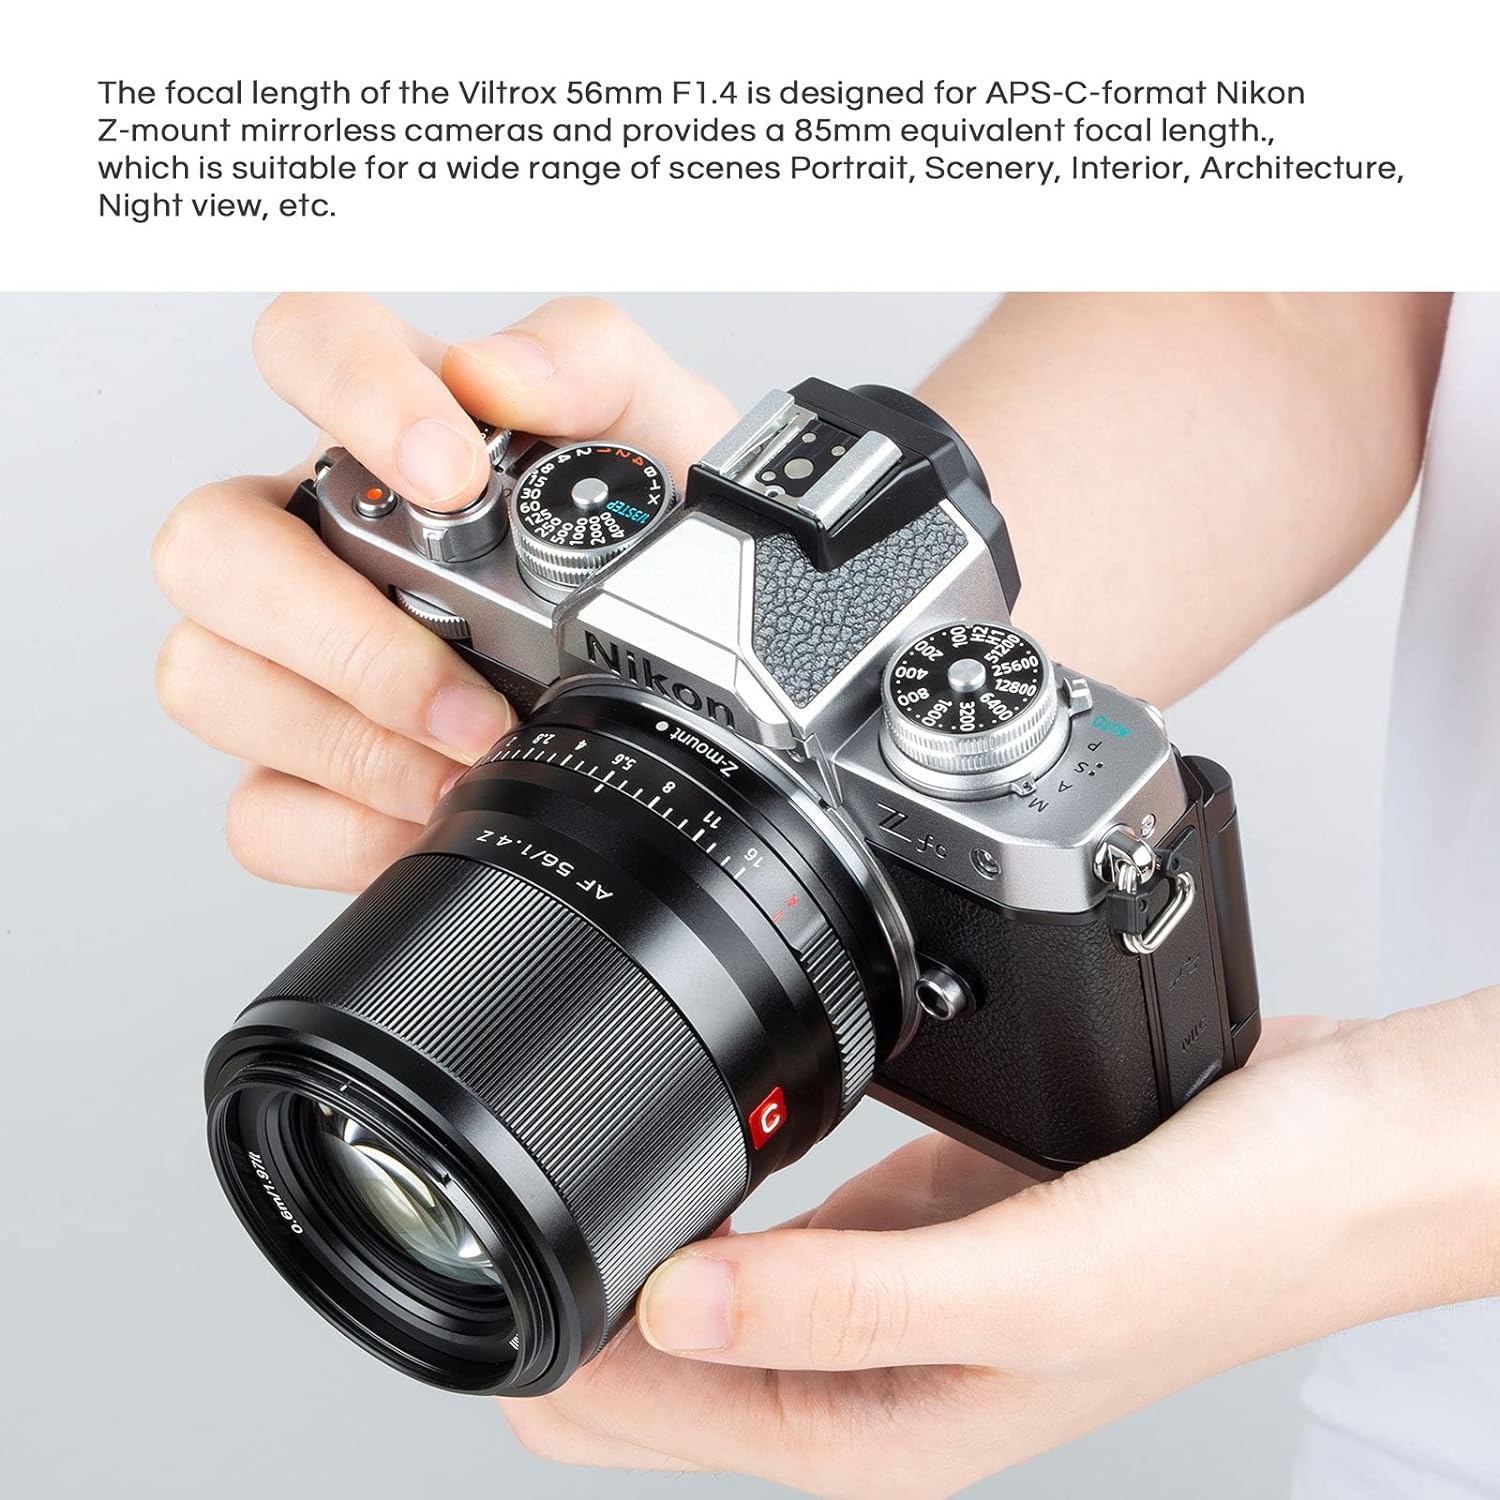 Buy Viltrox 56mm F1.4 Autofocus Lens, Compatible with APS-C Nikon